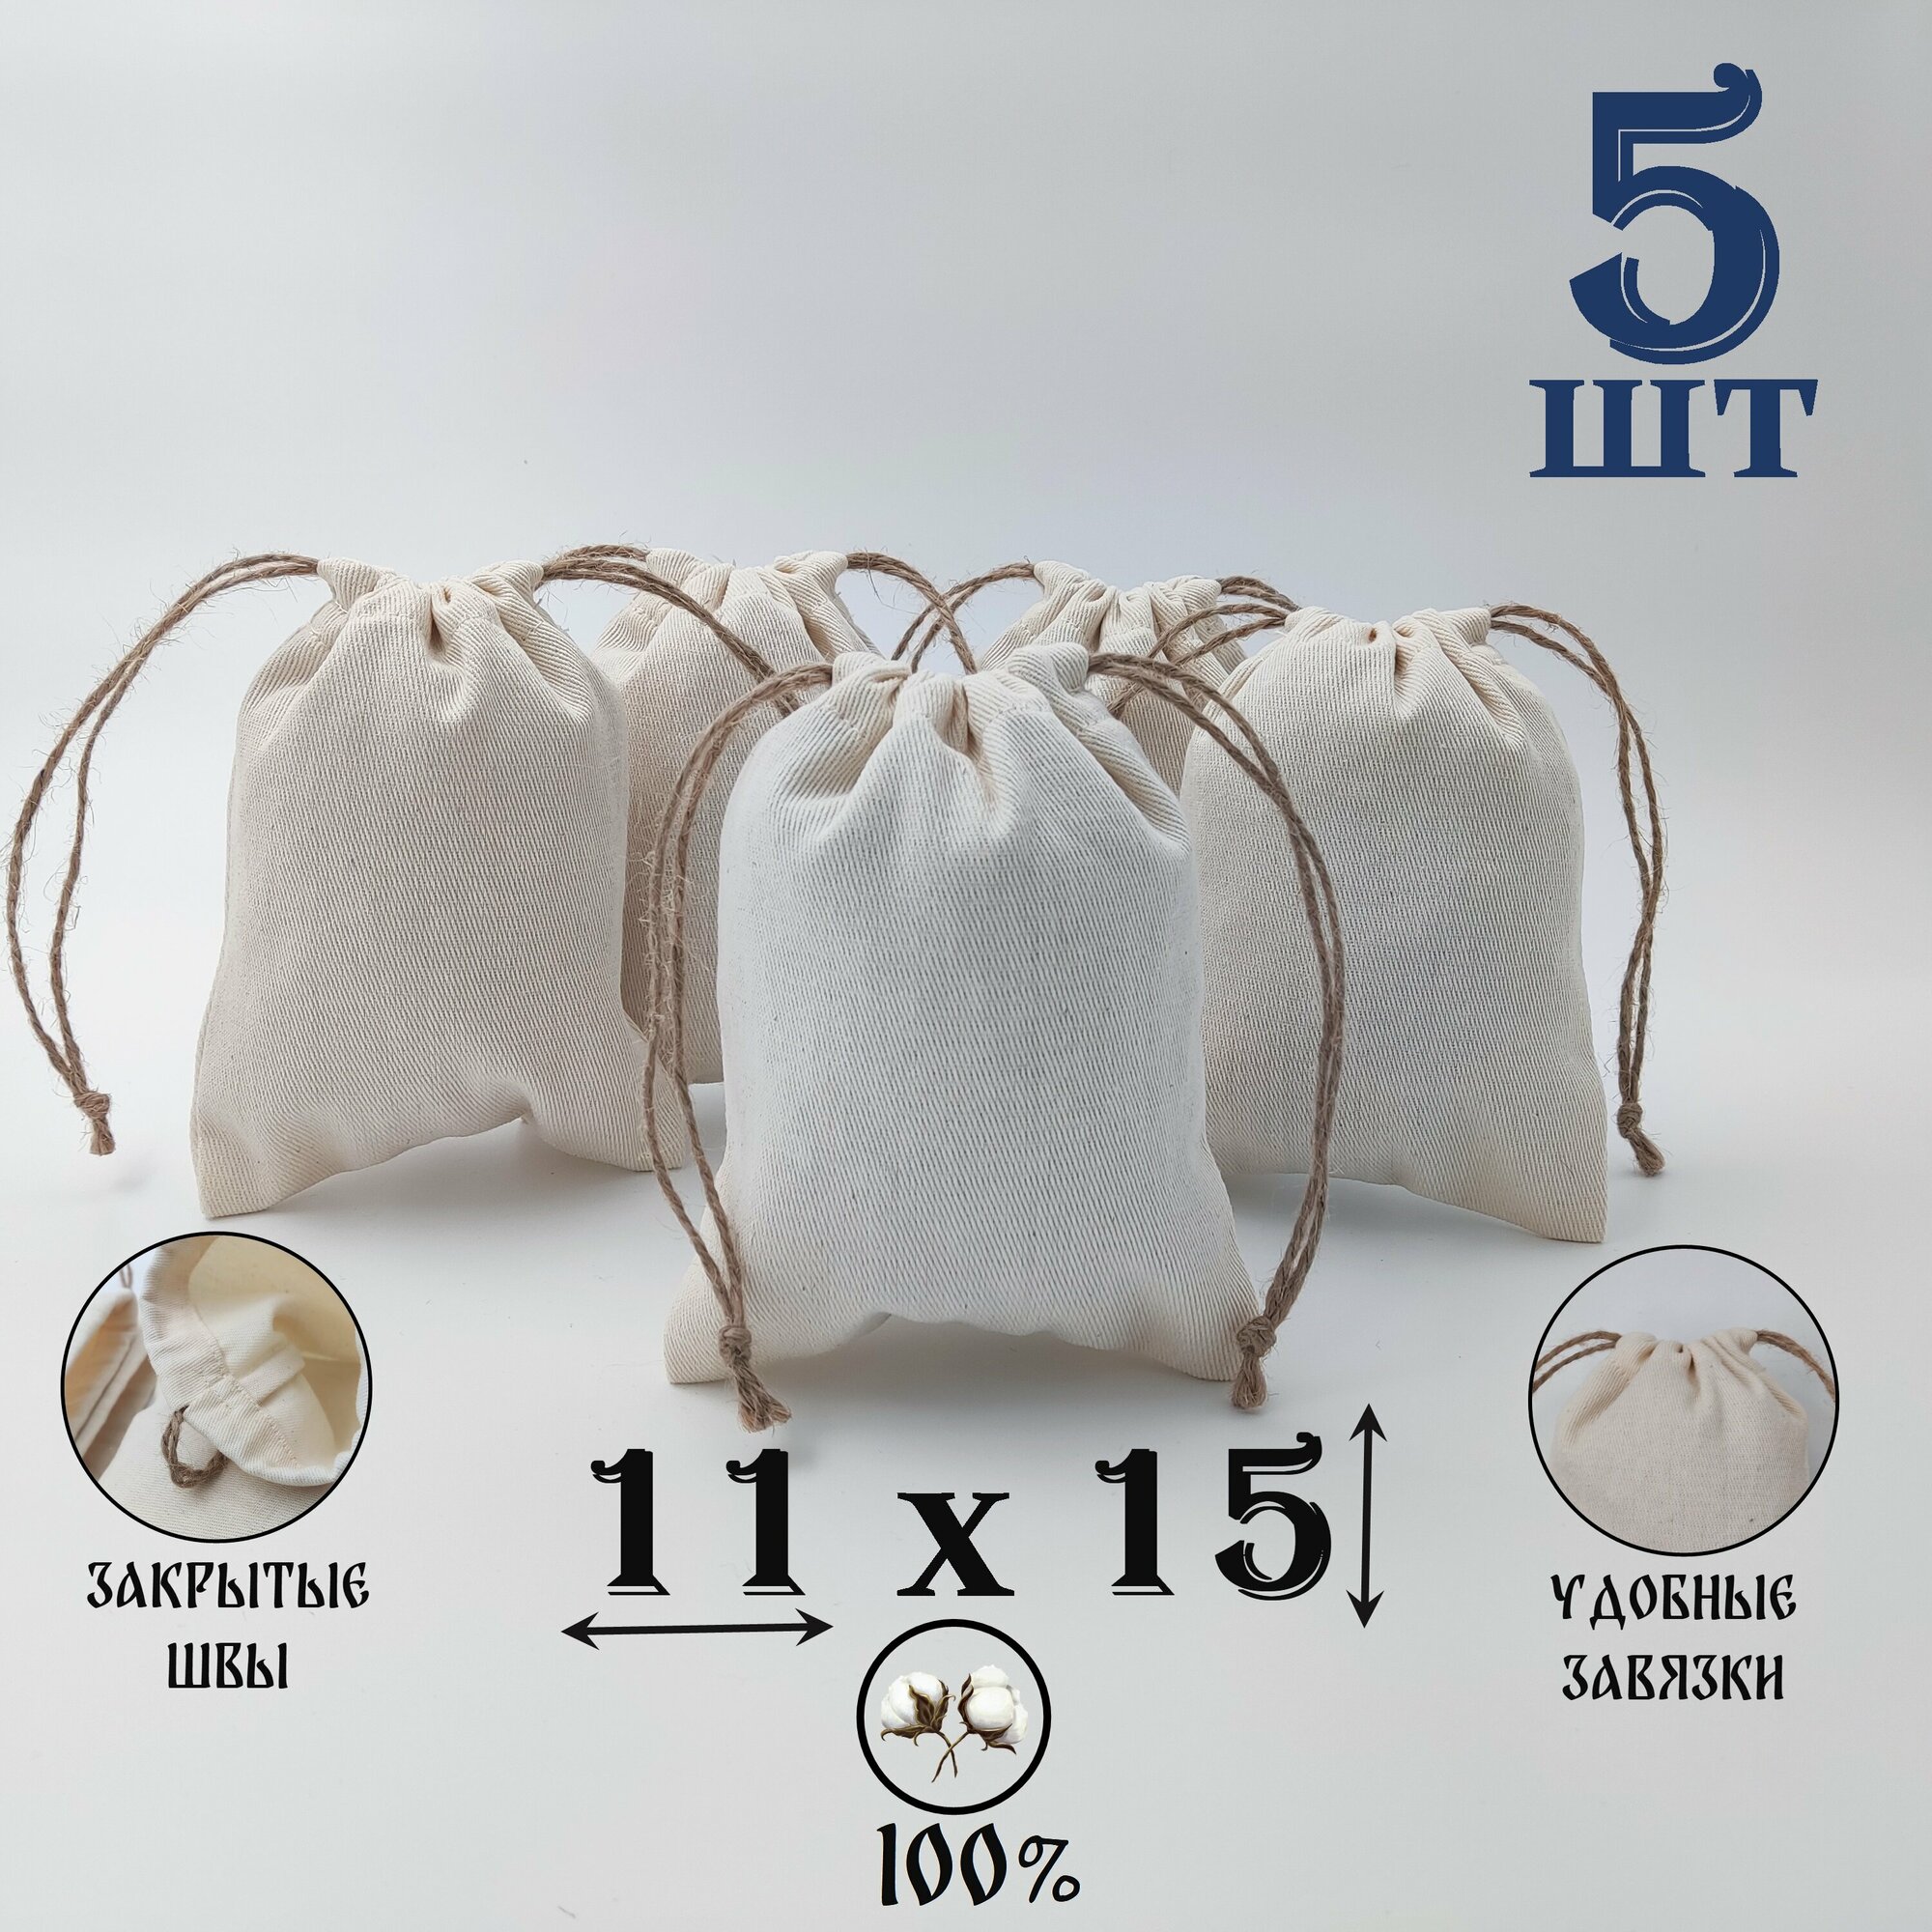 Хлопковый мешочек с джутовыми завязками 11 на 15 см./ 5 шт./ упаковка для подарков и хранения